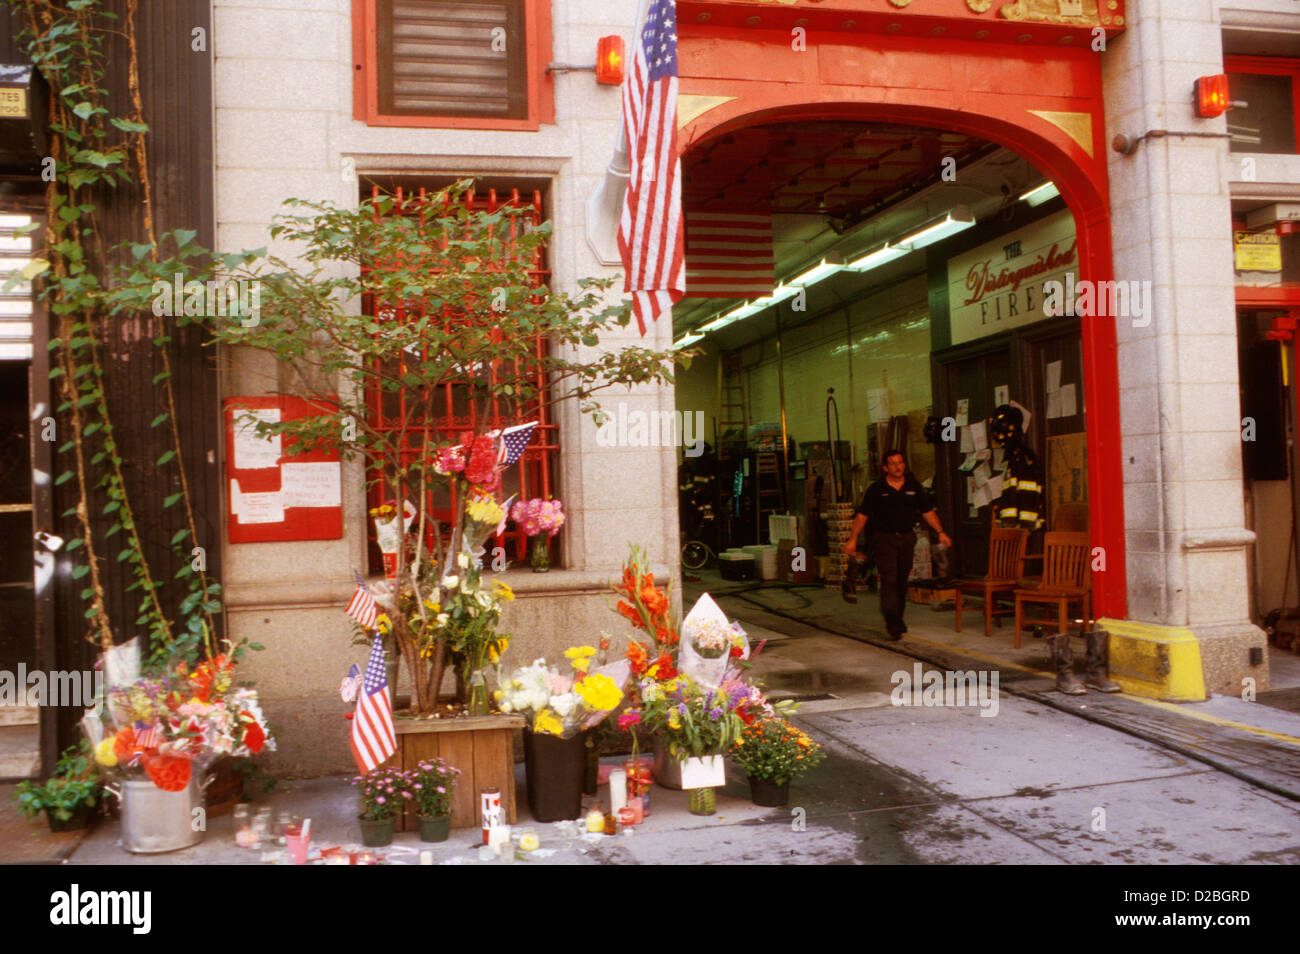 La ville de New York, le 11 septembre 2001. Monuments placés à la Caserne # 14 à la suite de l'attaque du World Trade Center Banque D'Images